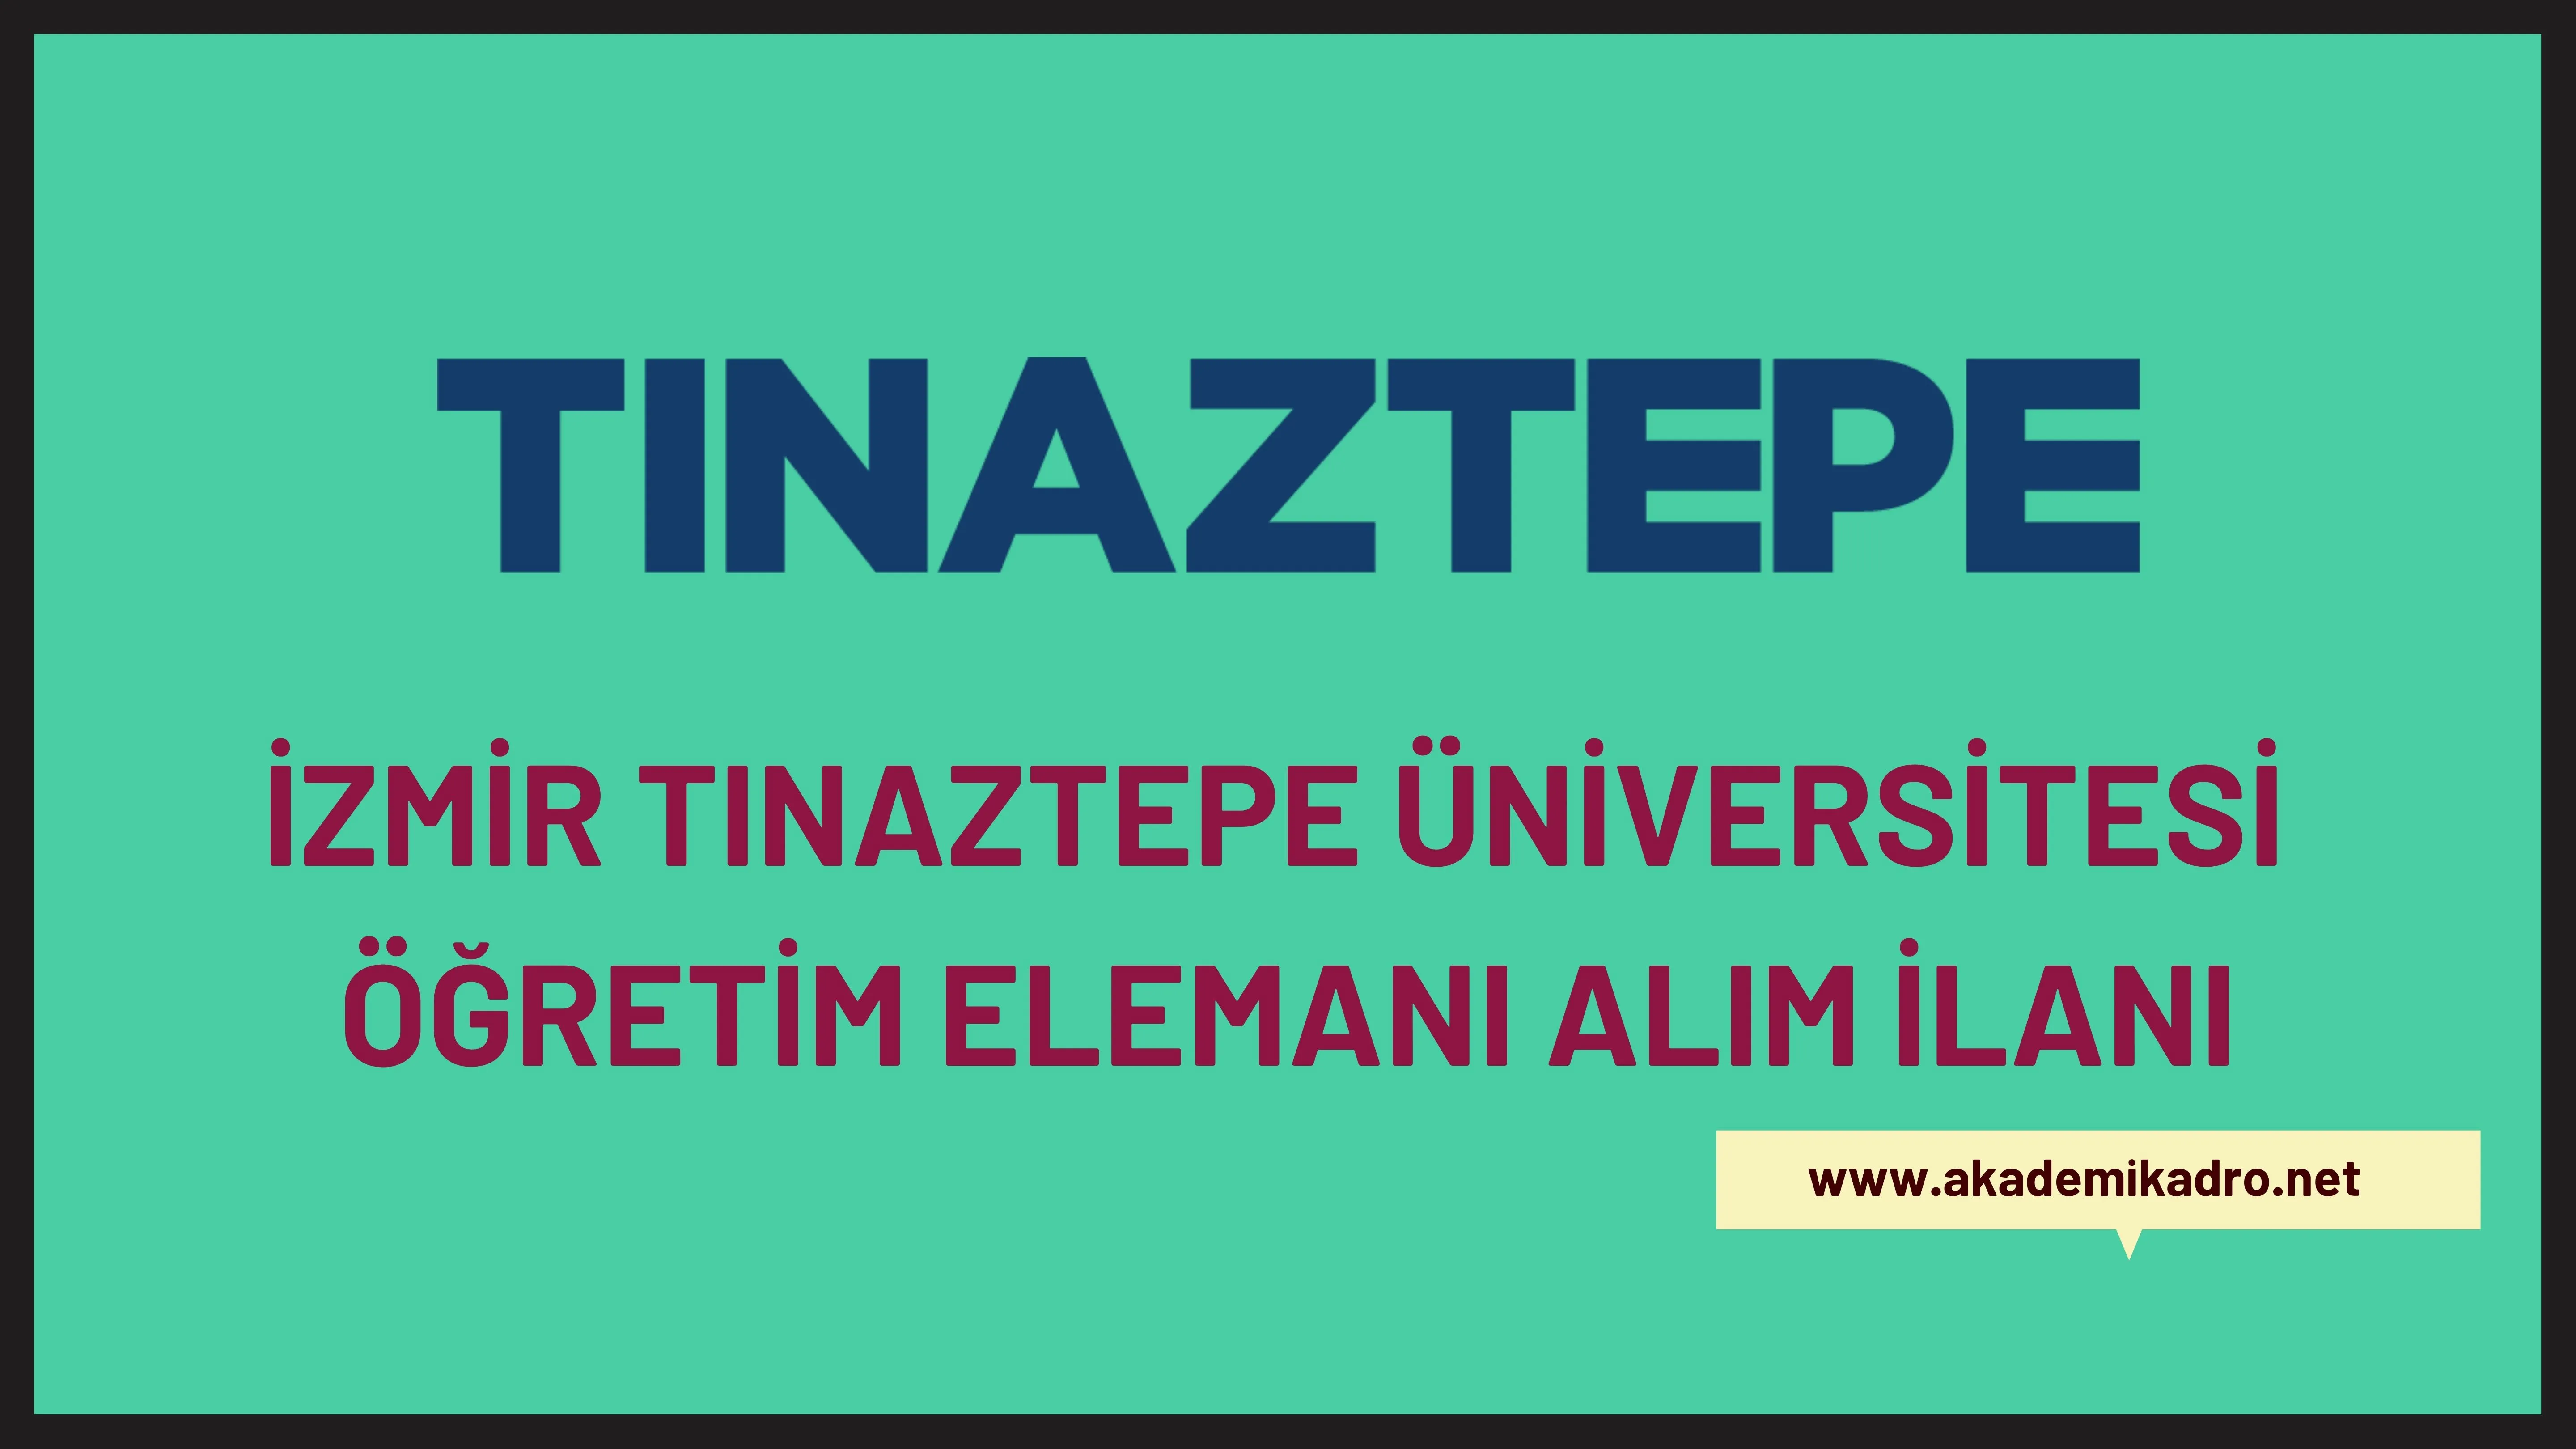 İzmir Tınaztepe Üniversitesi Öğretim görevlisi ve Öğretim üyesi olmak üzere 20 Öğretim elemanı alacak.